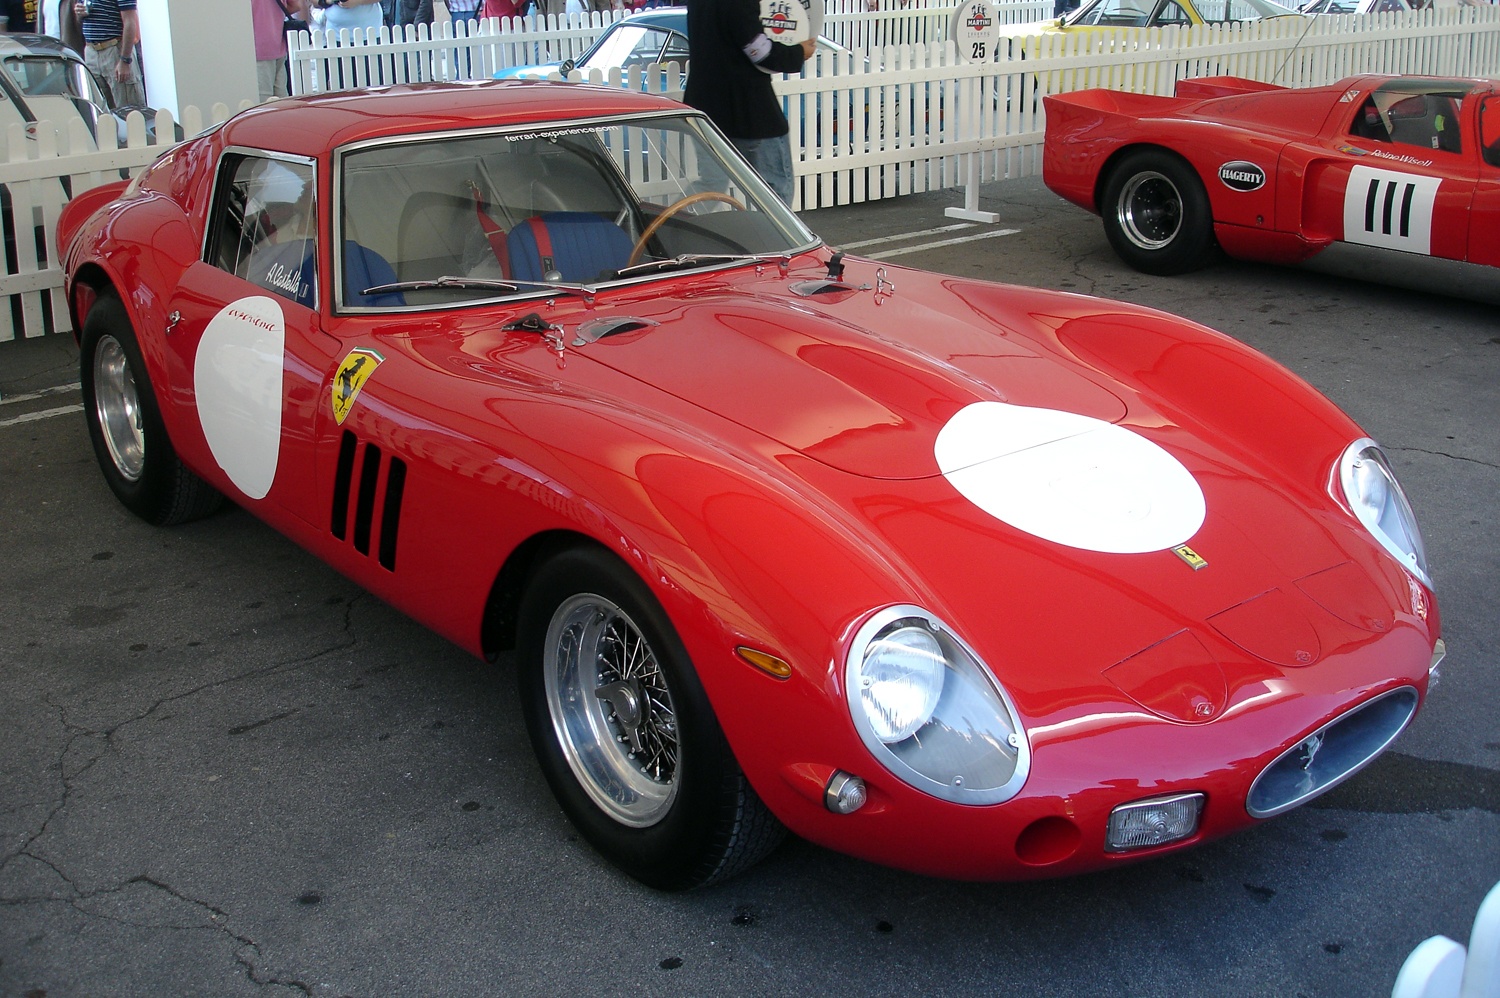 24.03.1962. mars 250, XNUMX | Frumraun Ferrari GTO kappakstursins